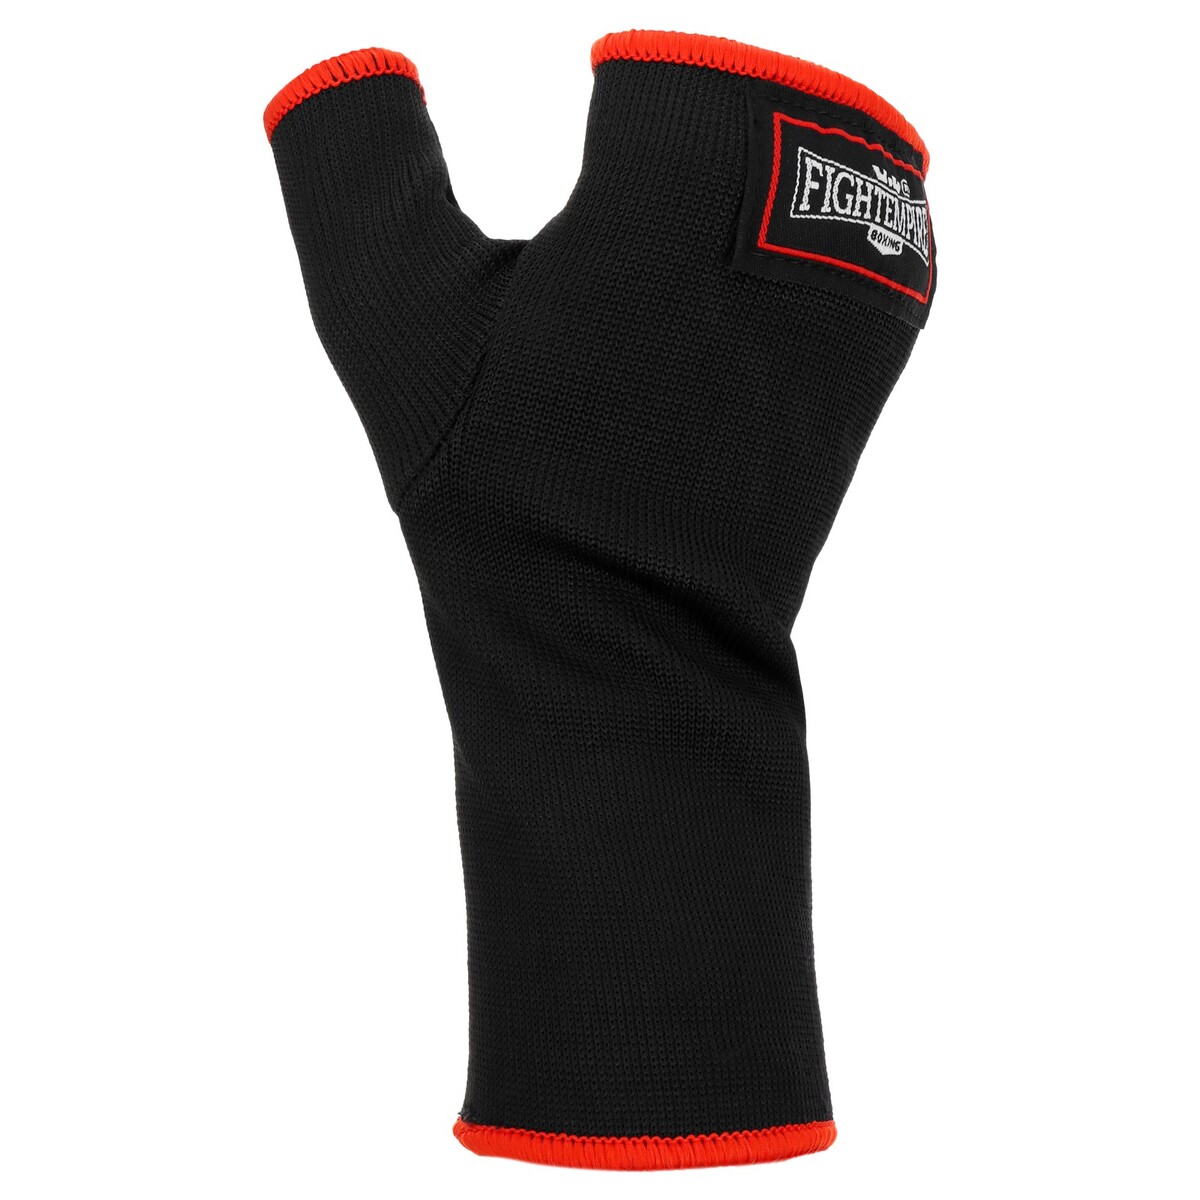 Внутренние перчатки fight empire, inner gloves FIGHT EMPIRE, цвет черный